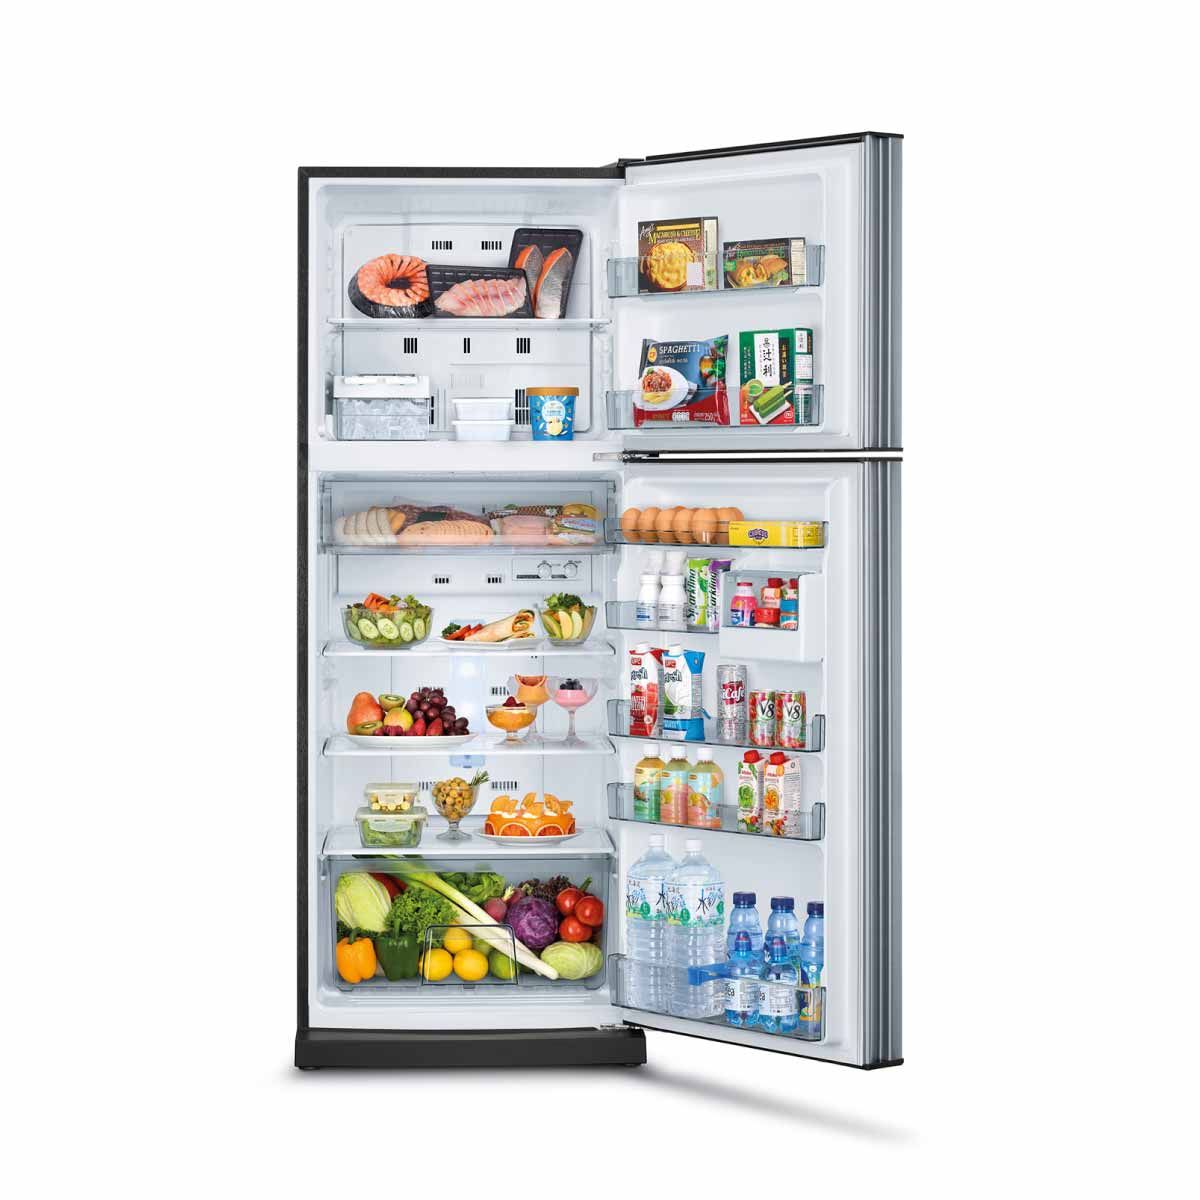 MITSUBISHI ELECTRIC ตู้เย็น 2 ประตู 12.7 คิว INVERTER สีซิลกี้ซิลเวอร์ รุ่น MR-FC38ES